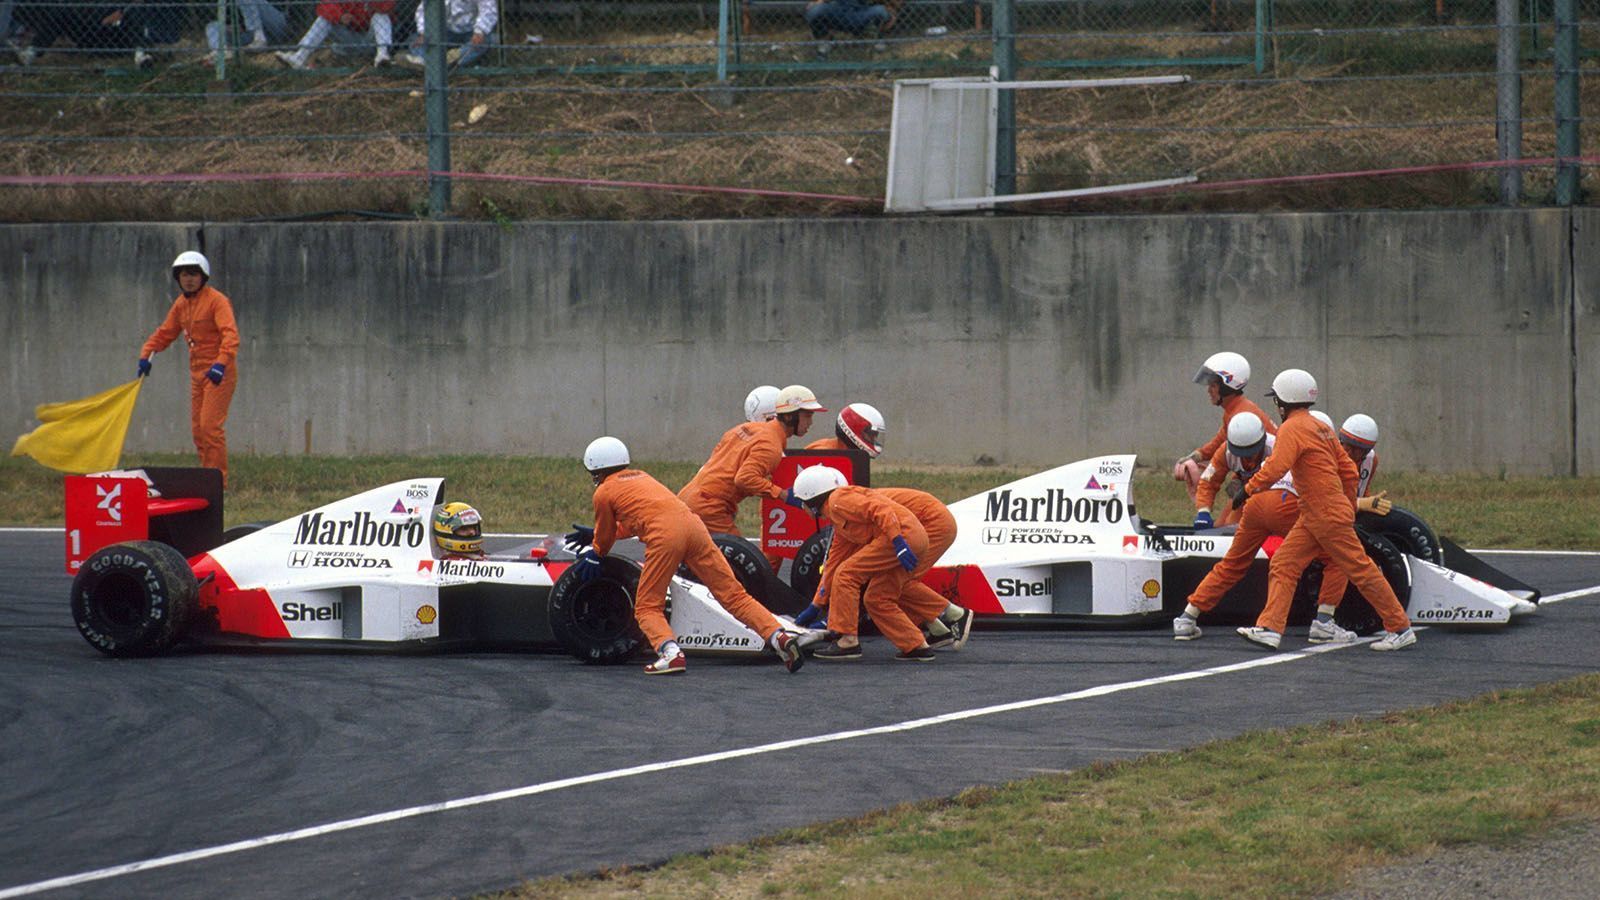 
                <strong>Alain Prost gegen Ayrton Senna </strong><br>
                Die wohl bekannteste Formel-1-Rivalität lieferten sich zwei absolute Legenden des Motorsports. Zwischen 1988 und 1993 kamen sich Alain Prost und Ayrton Senna immer wieder in die Quere. Dabei gelten vor allem die Japan-Rennen 1989 und 1990 als absolute Höhepunkte. 1989 kollidierten beide und Prost konnte das Rennen nicht beenden. Senna wurde von den Streckenposten zurück auf den Asphalt geschoben und gewann das Rennen. Später wurde er von der FIA disqualifiziert, da er auf inkorrekte Art und Weise wieder auf die Strecke zurückfuhr. Das hatte zur Folge, dass der WM-Titel doch an Alain Prost ging.
              